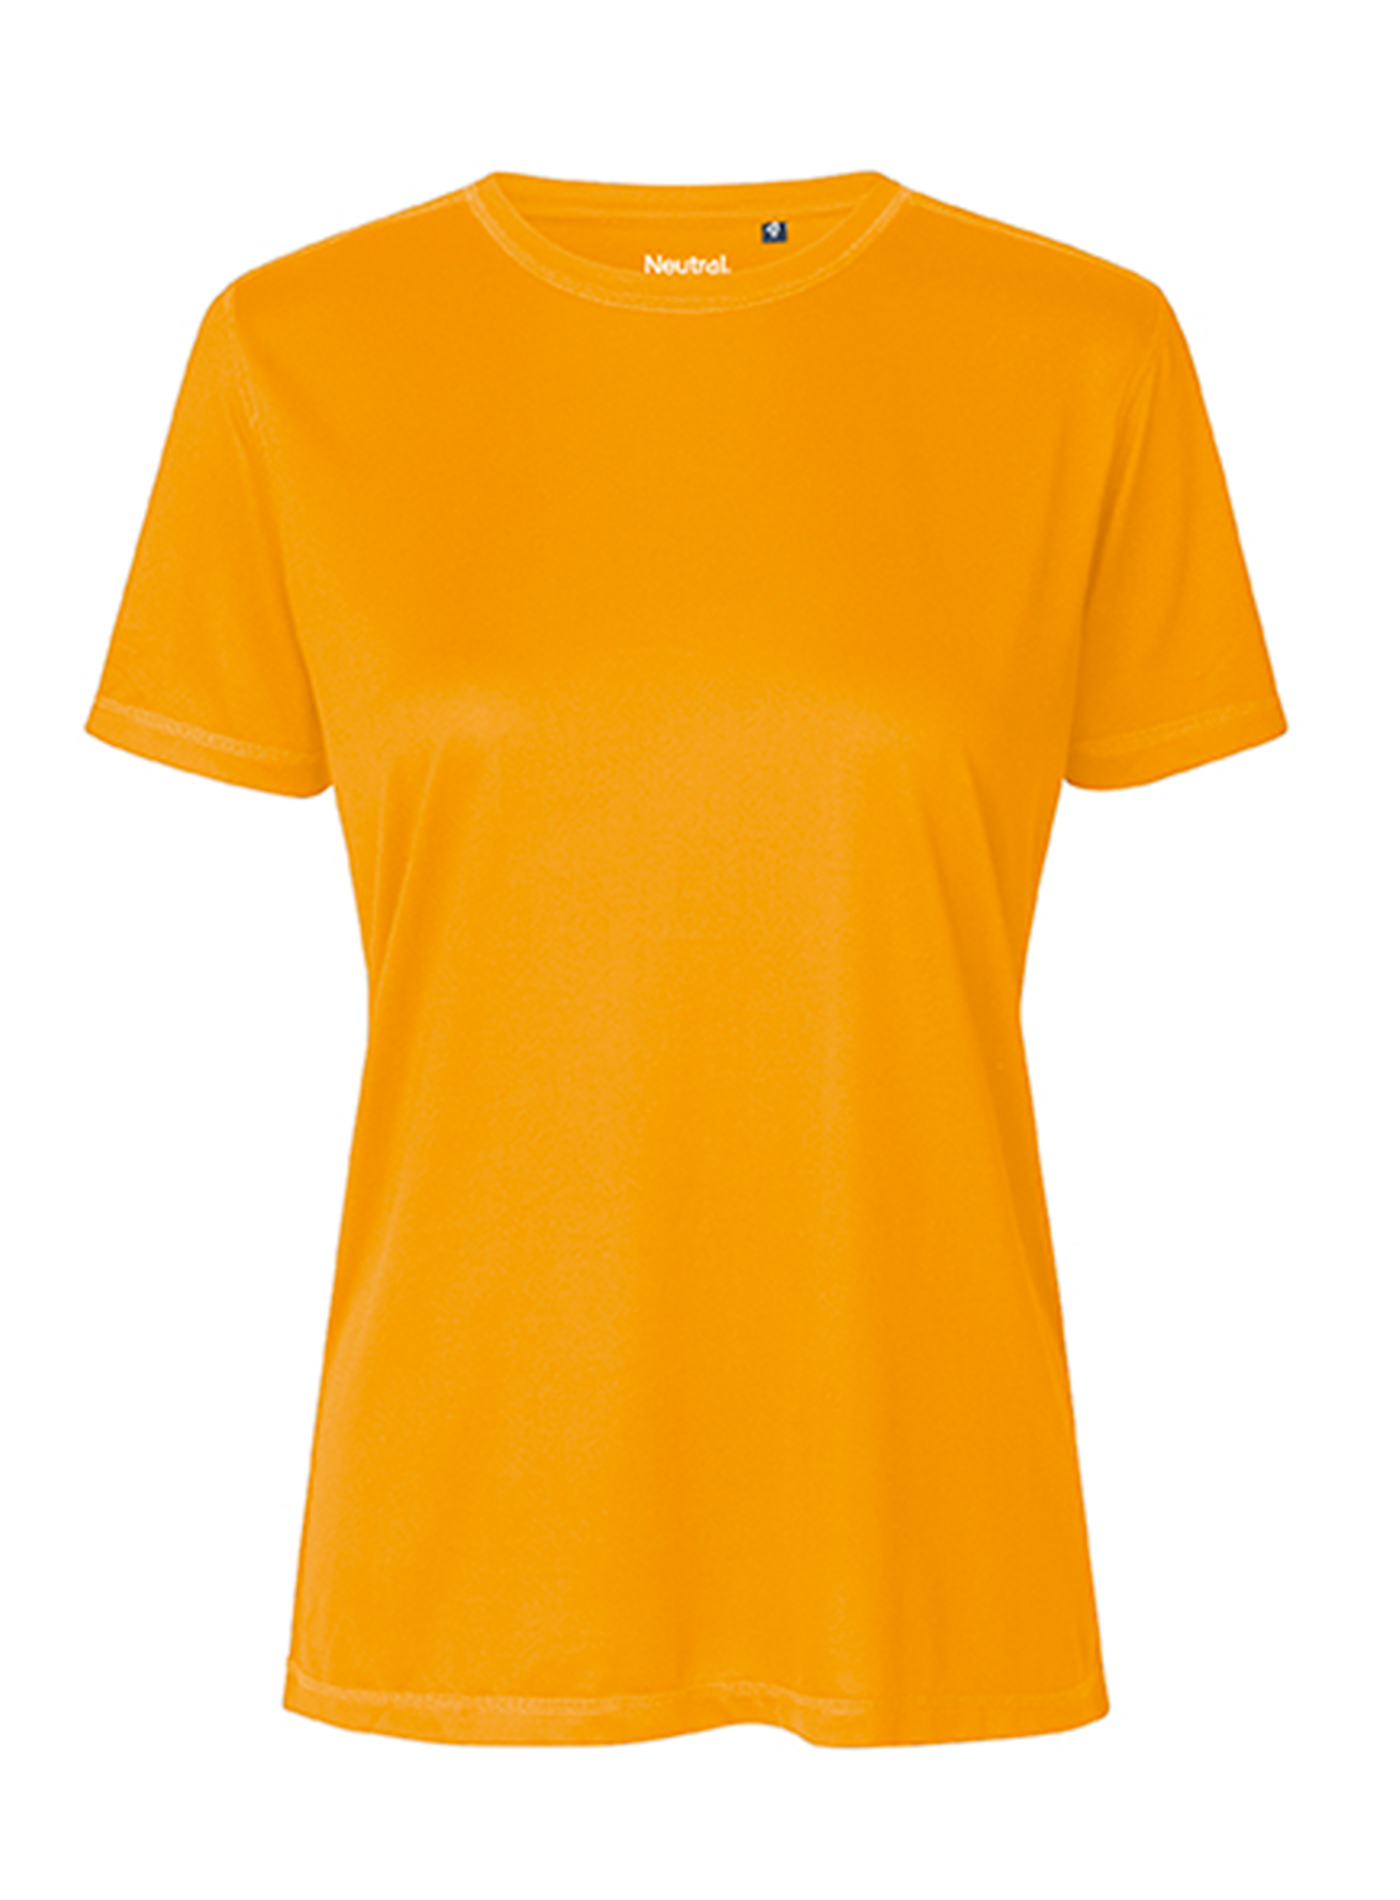 Dámské tričko Performance Neutral - Oranžová S